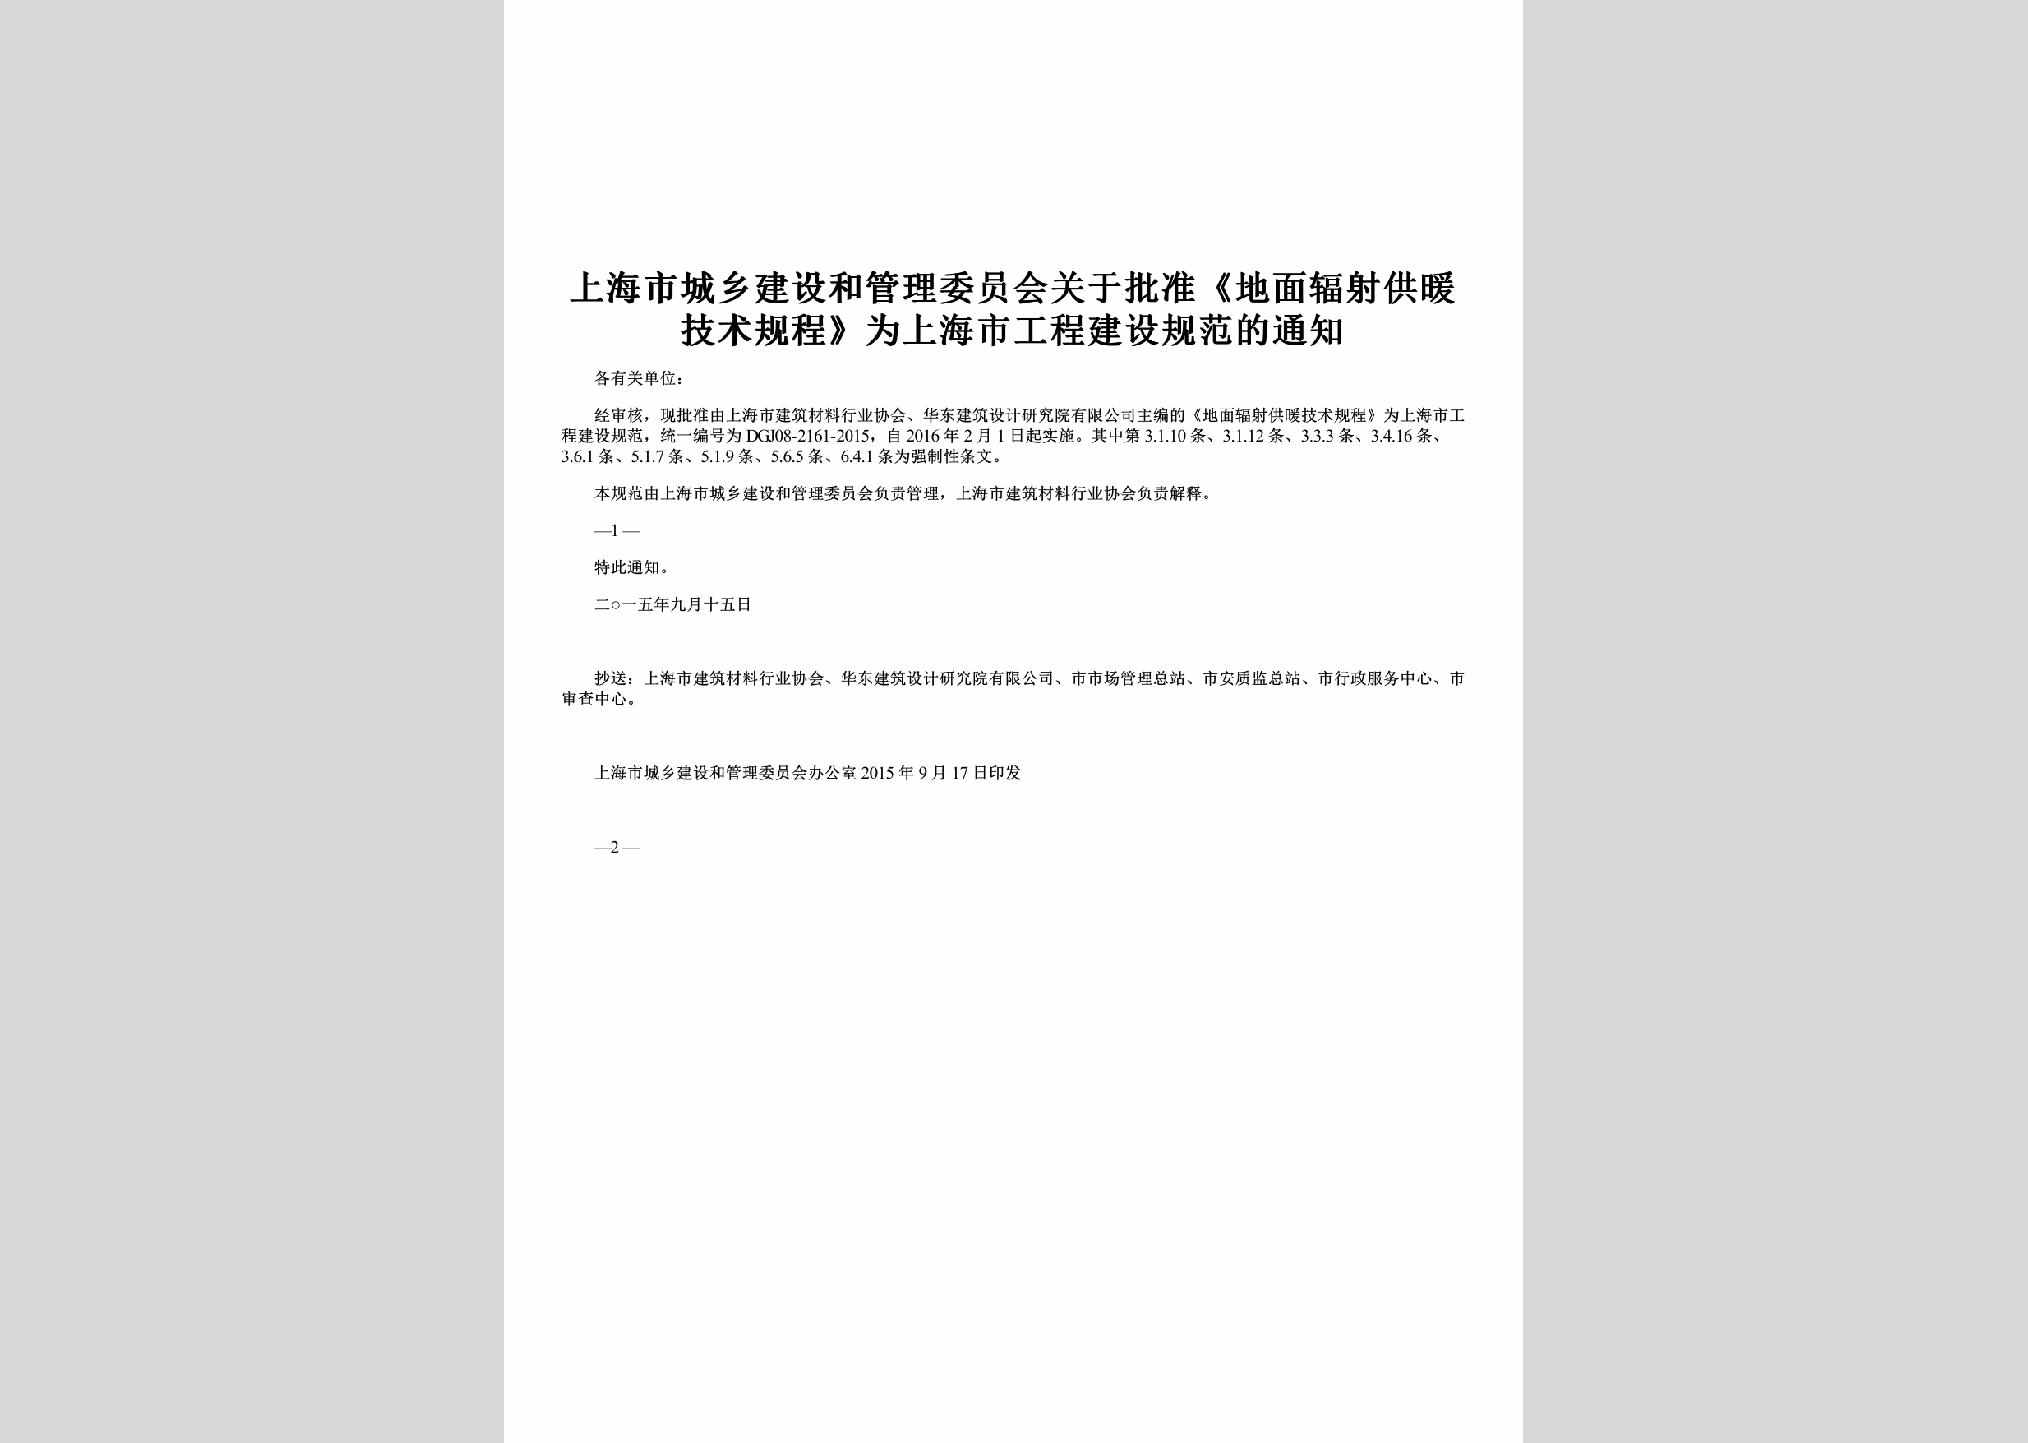 SH-GNJSGCTZ-2015：关于批准《地面辐射供暖技术规程》为上海市工程建设规范的通知